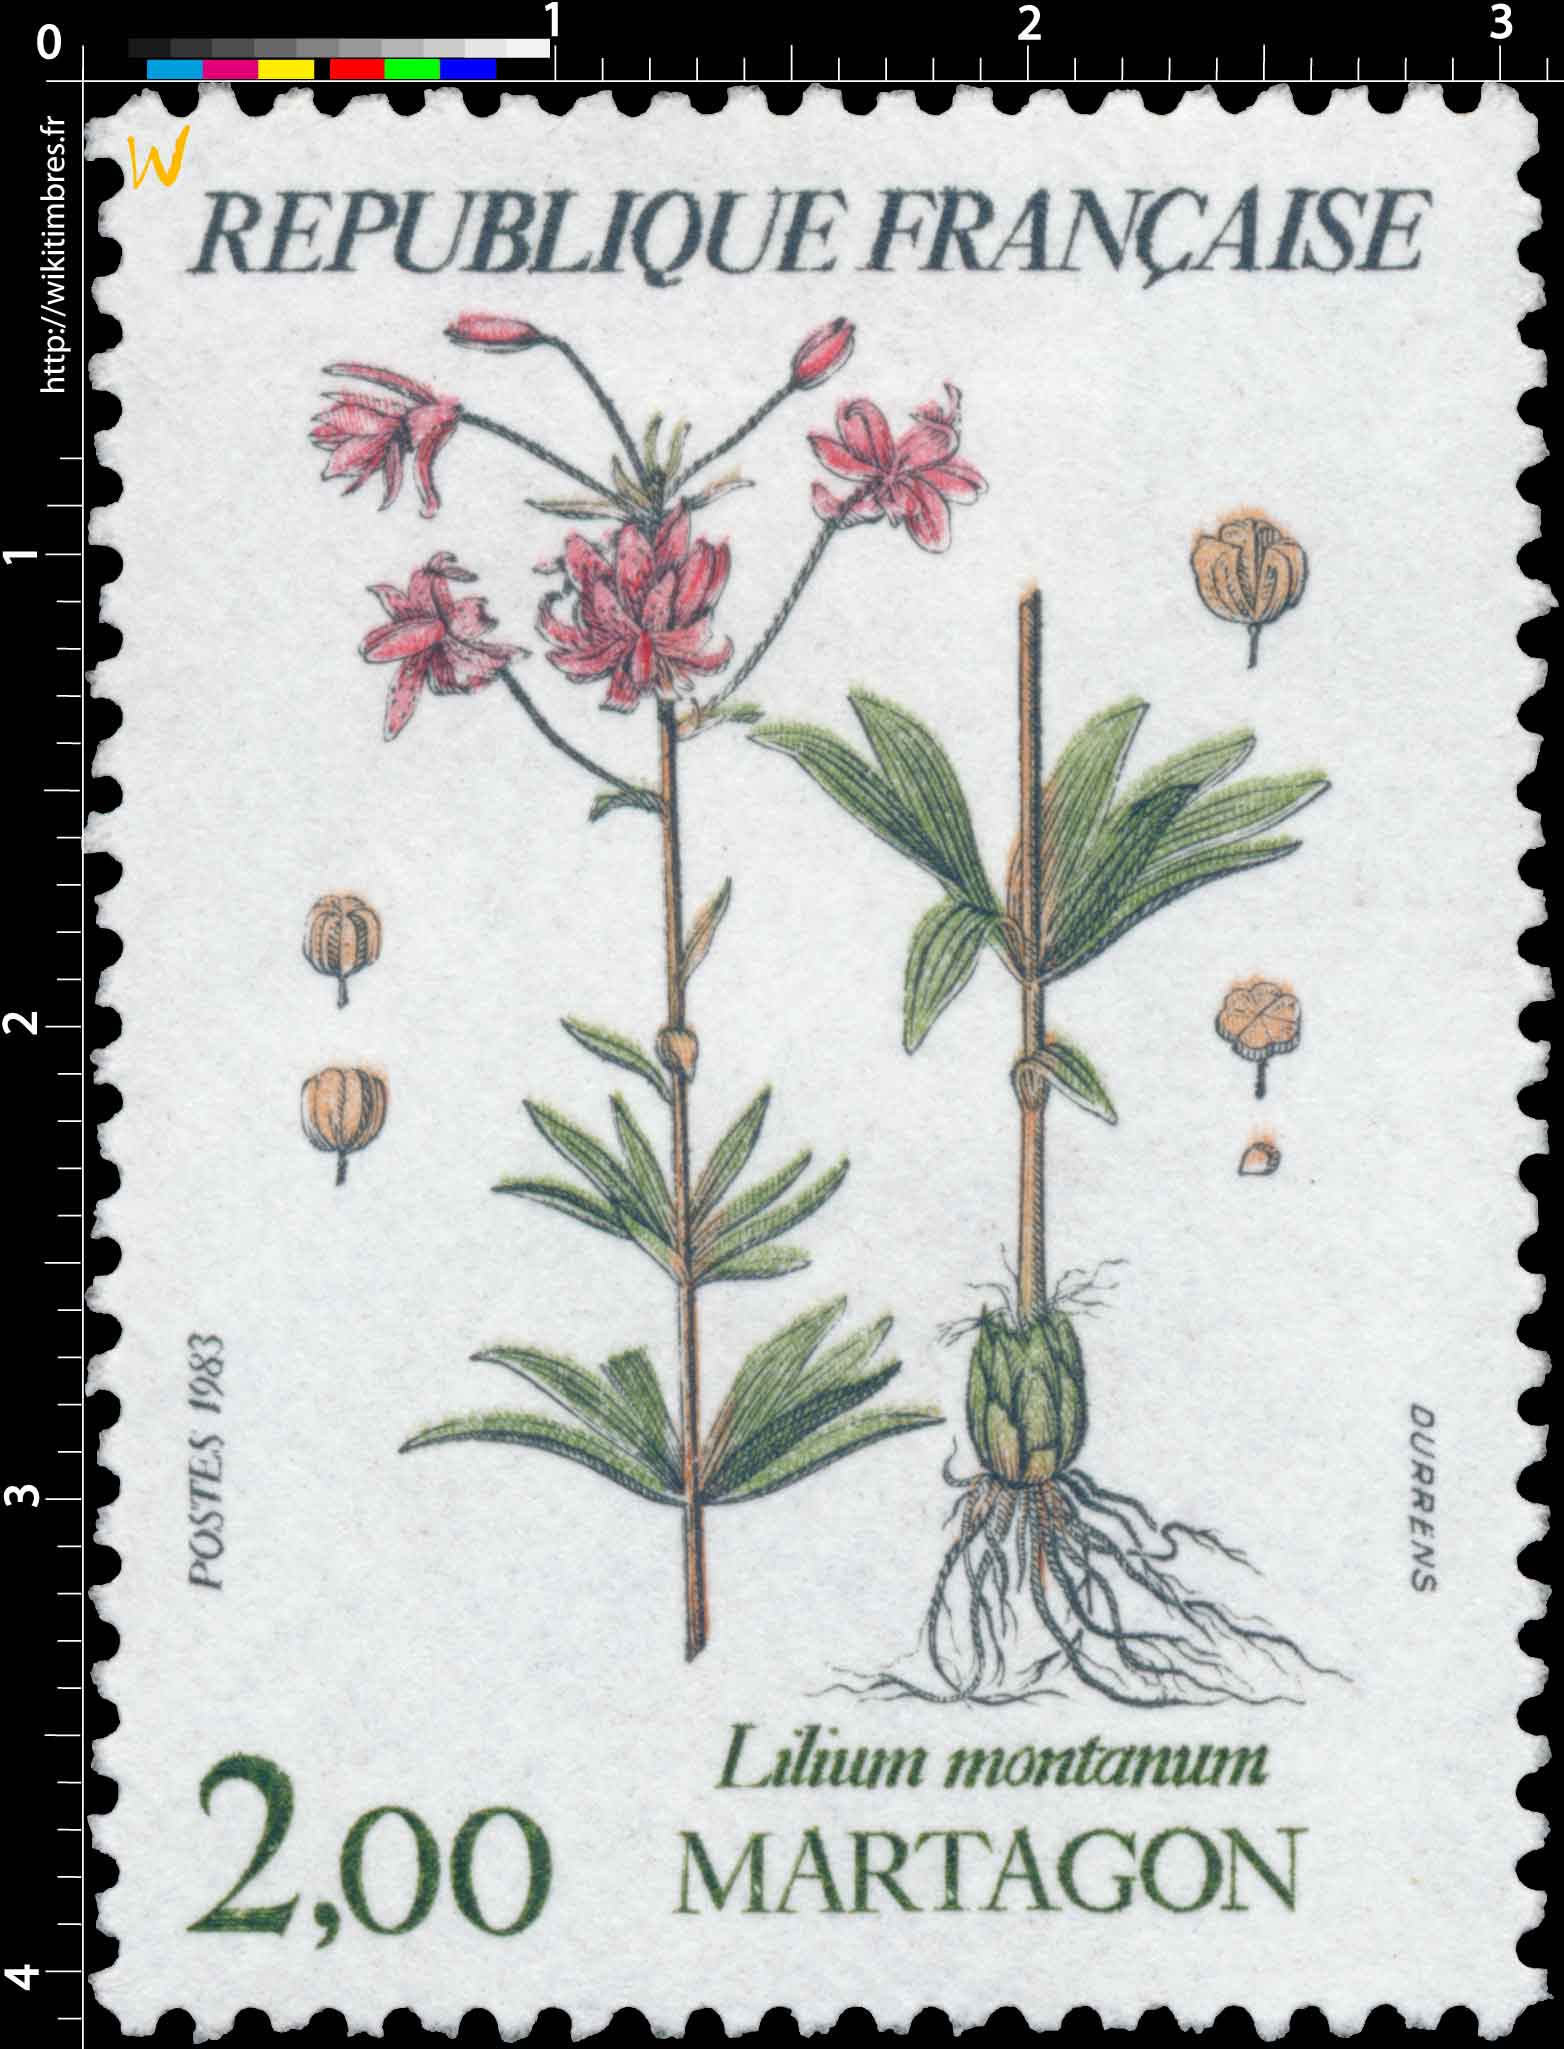 1983 MARTAGON Lilium montanum